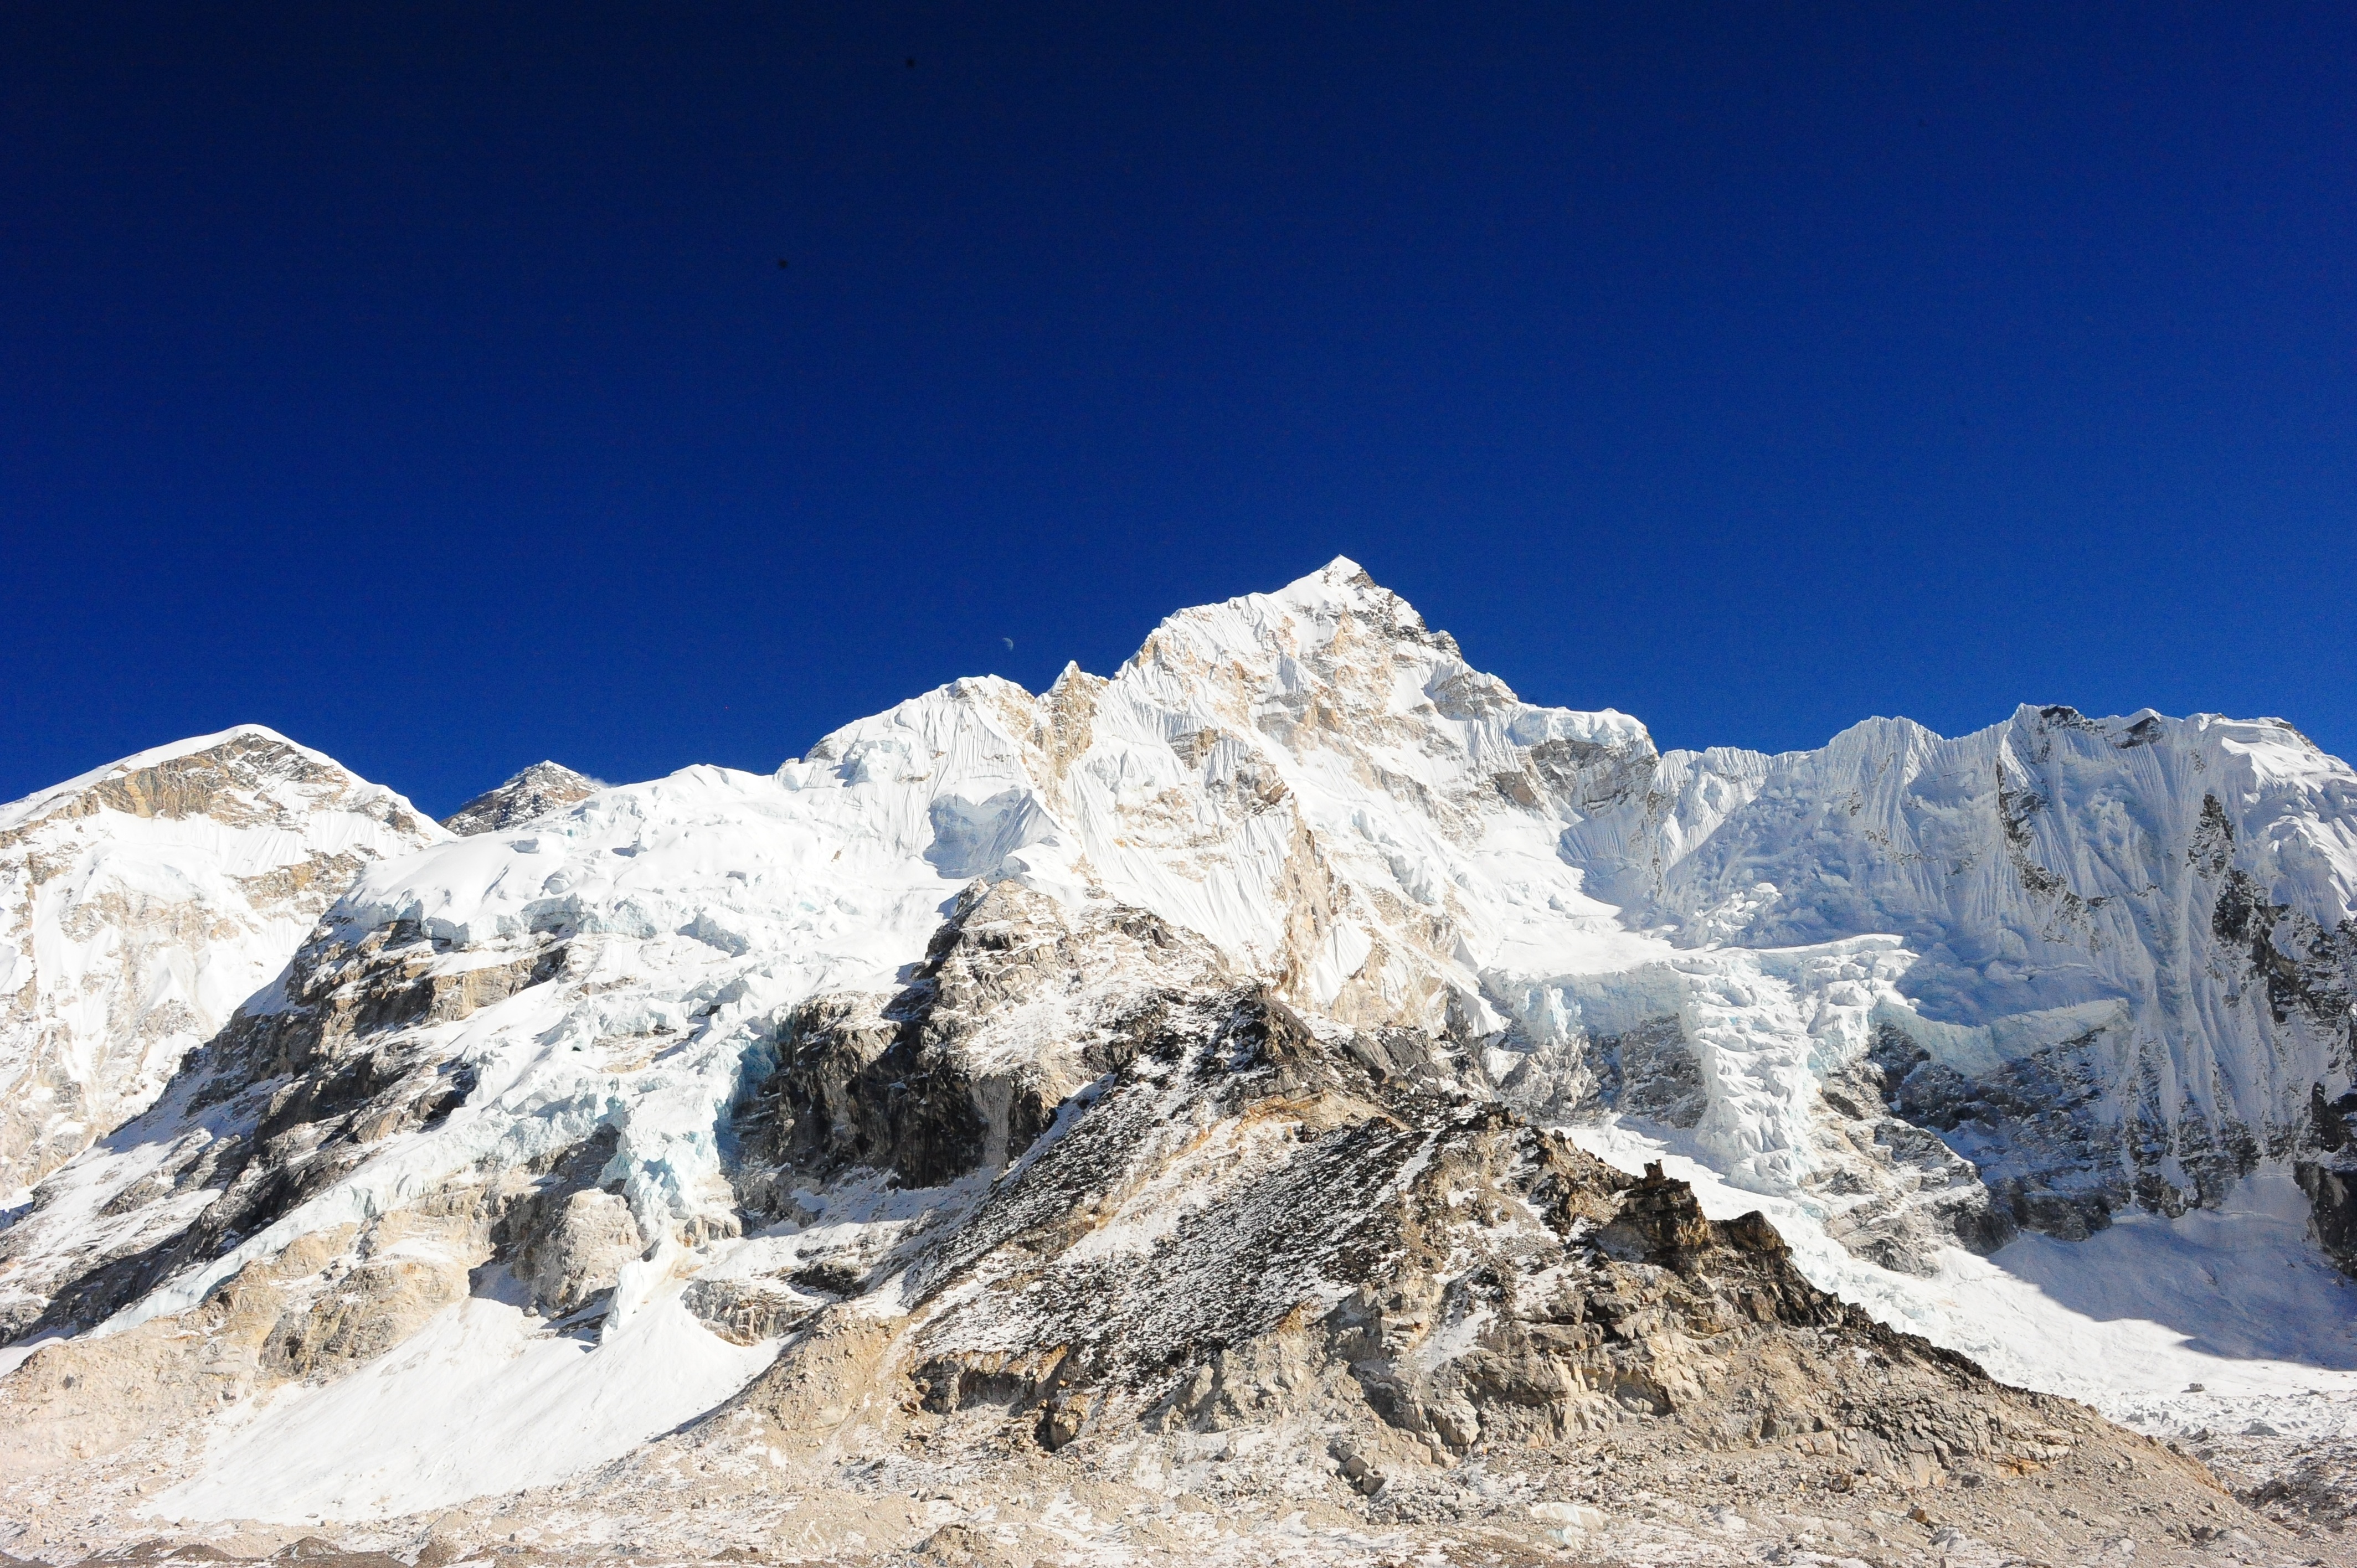 Fotografía del Everest